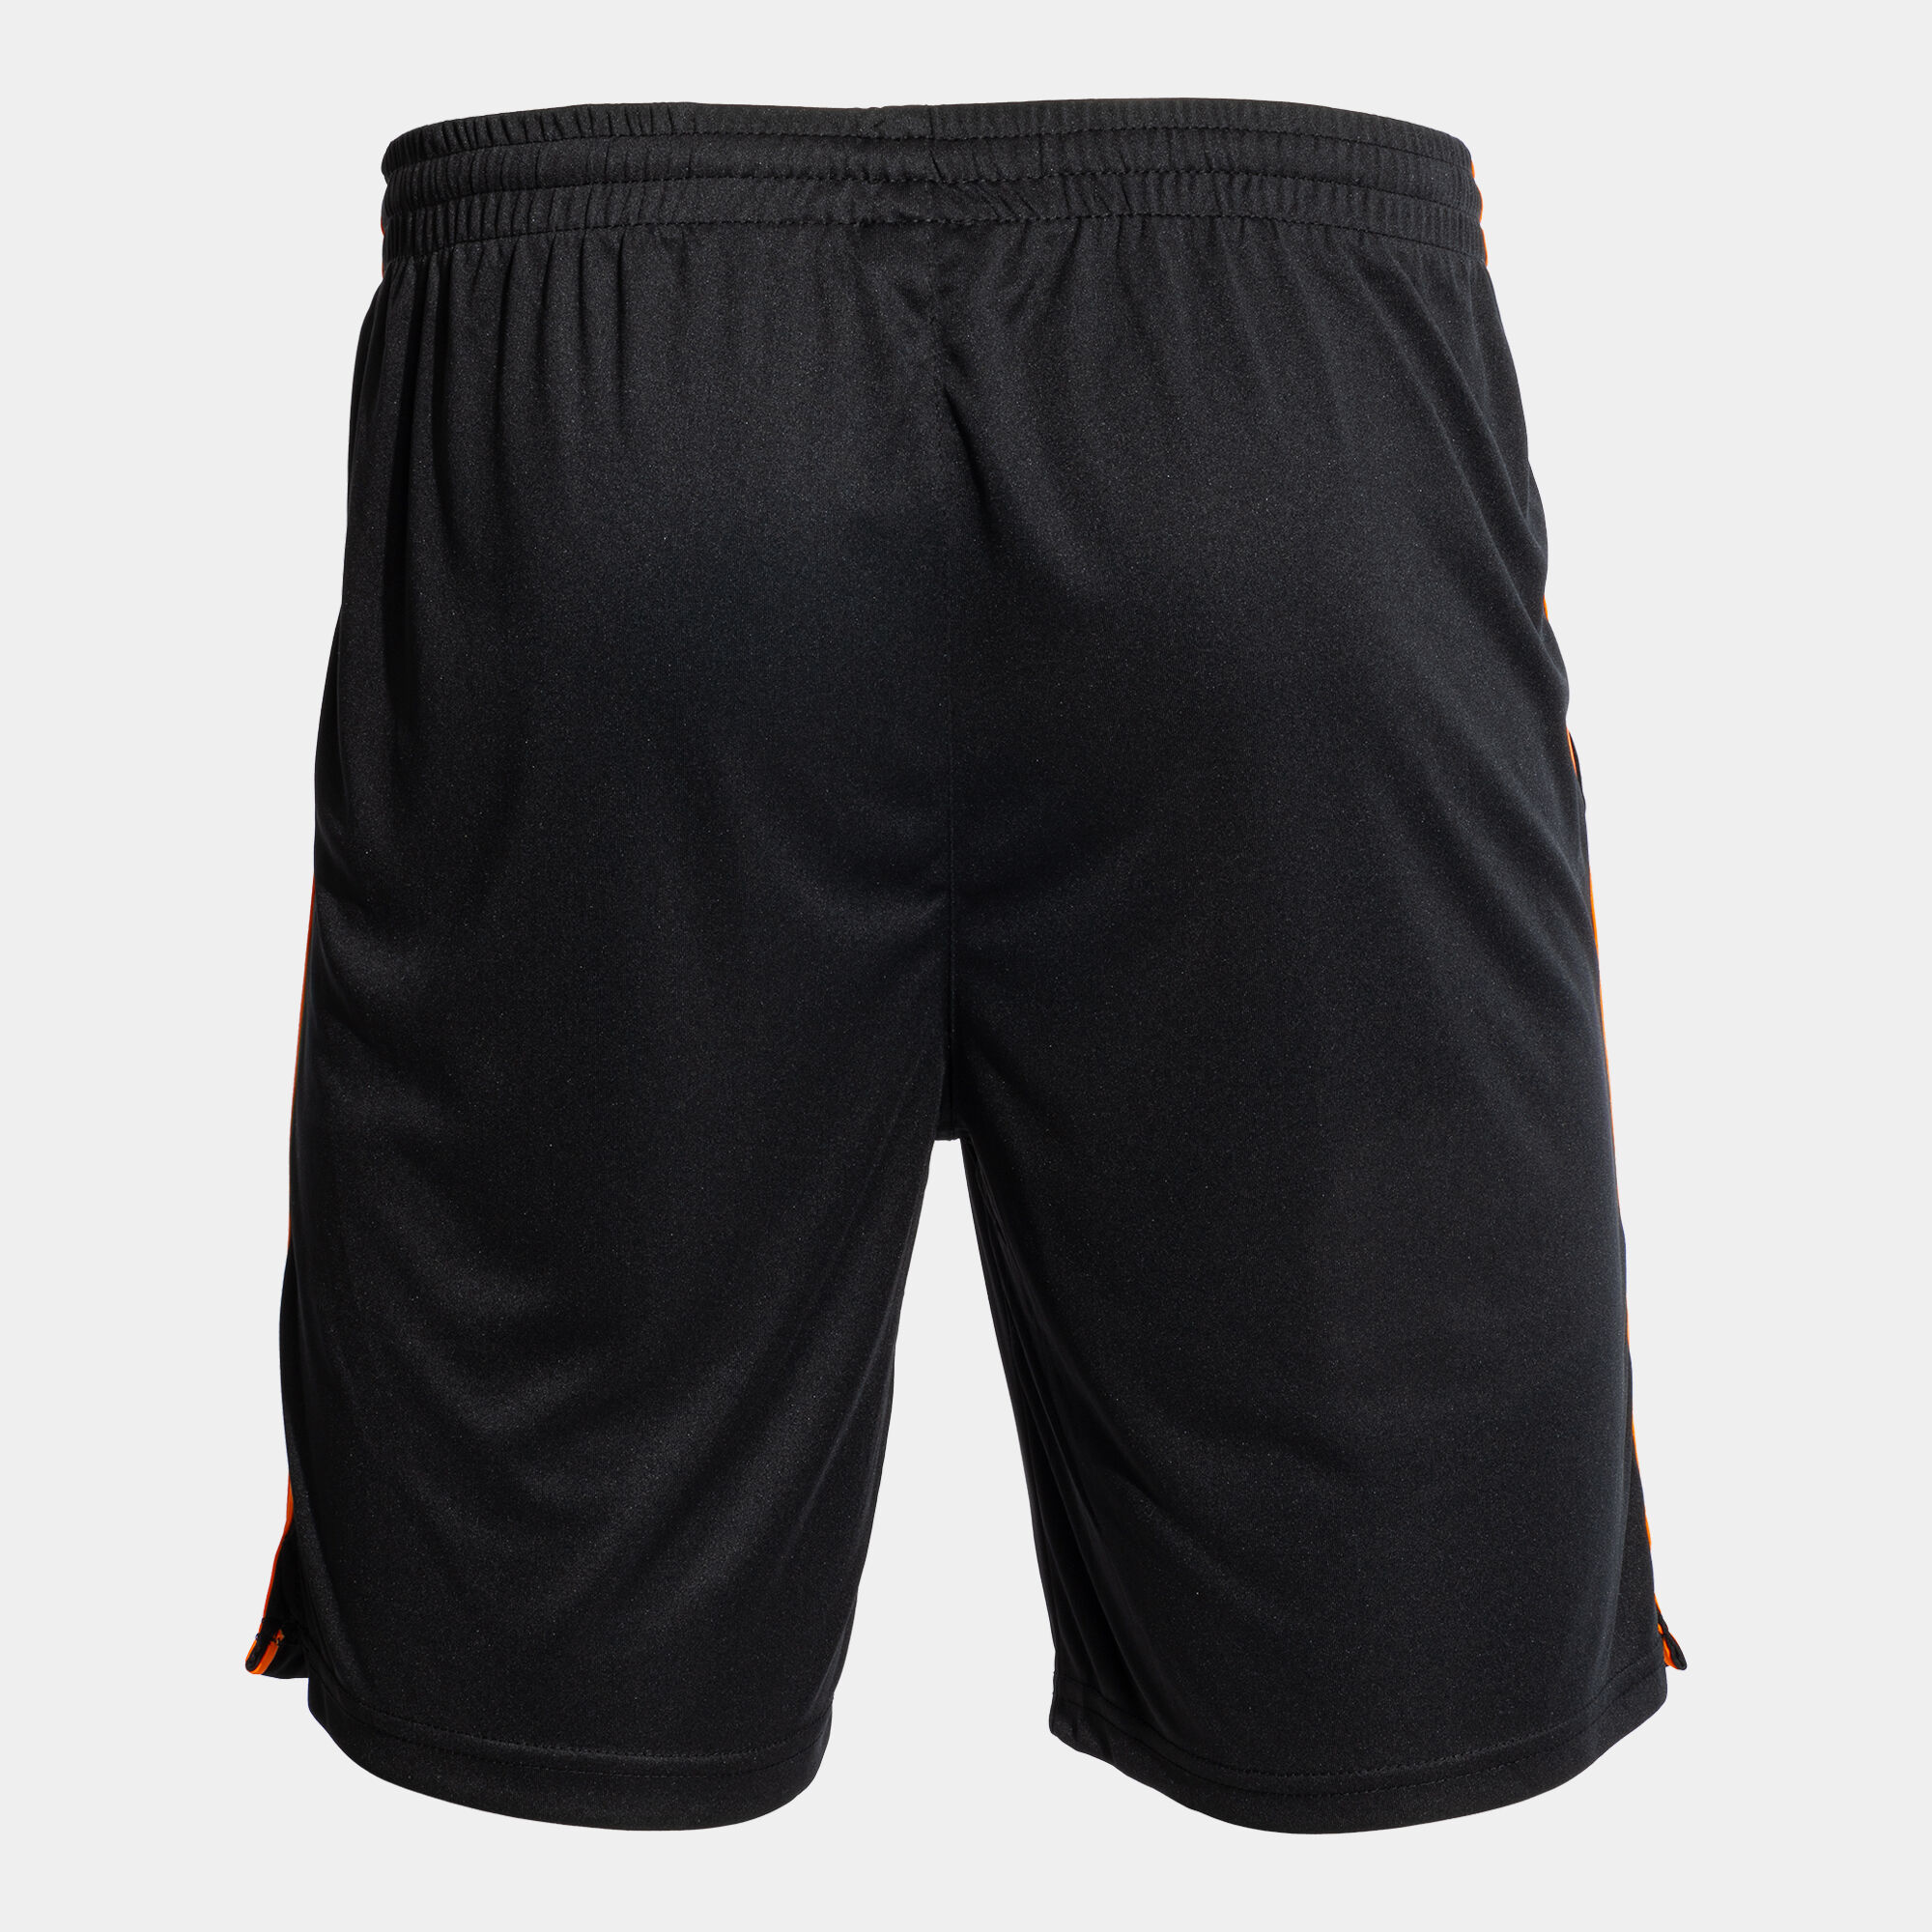 Bermuda shorts man Open III black fluorescent orange